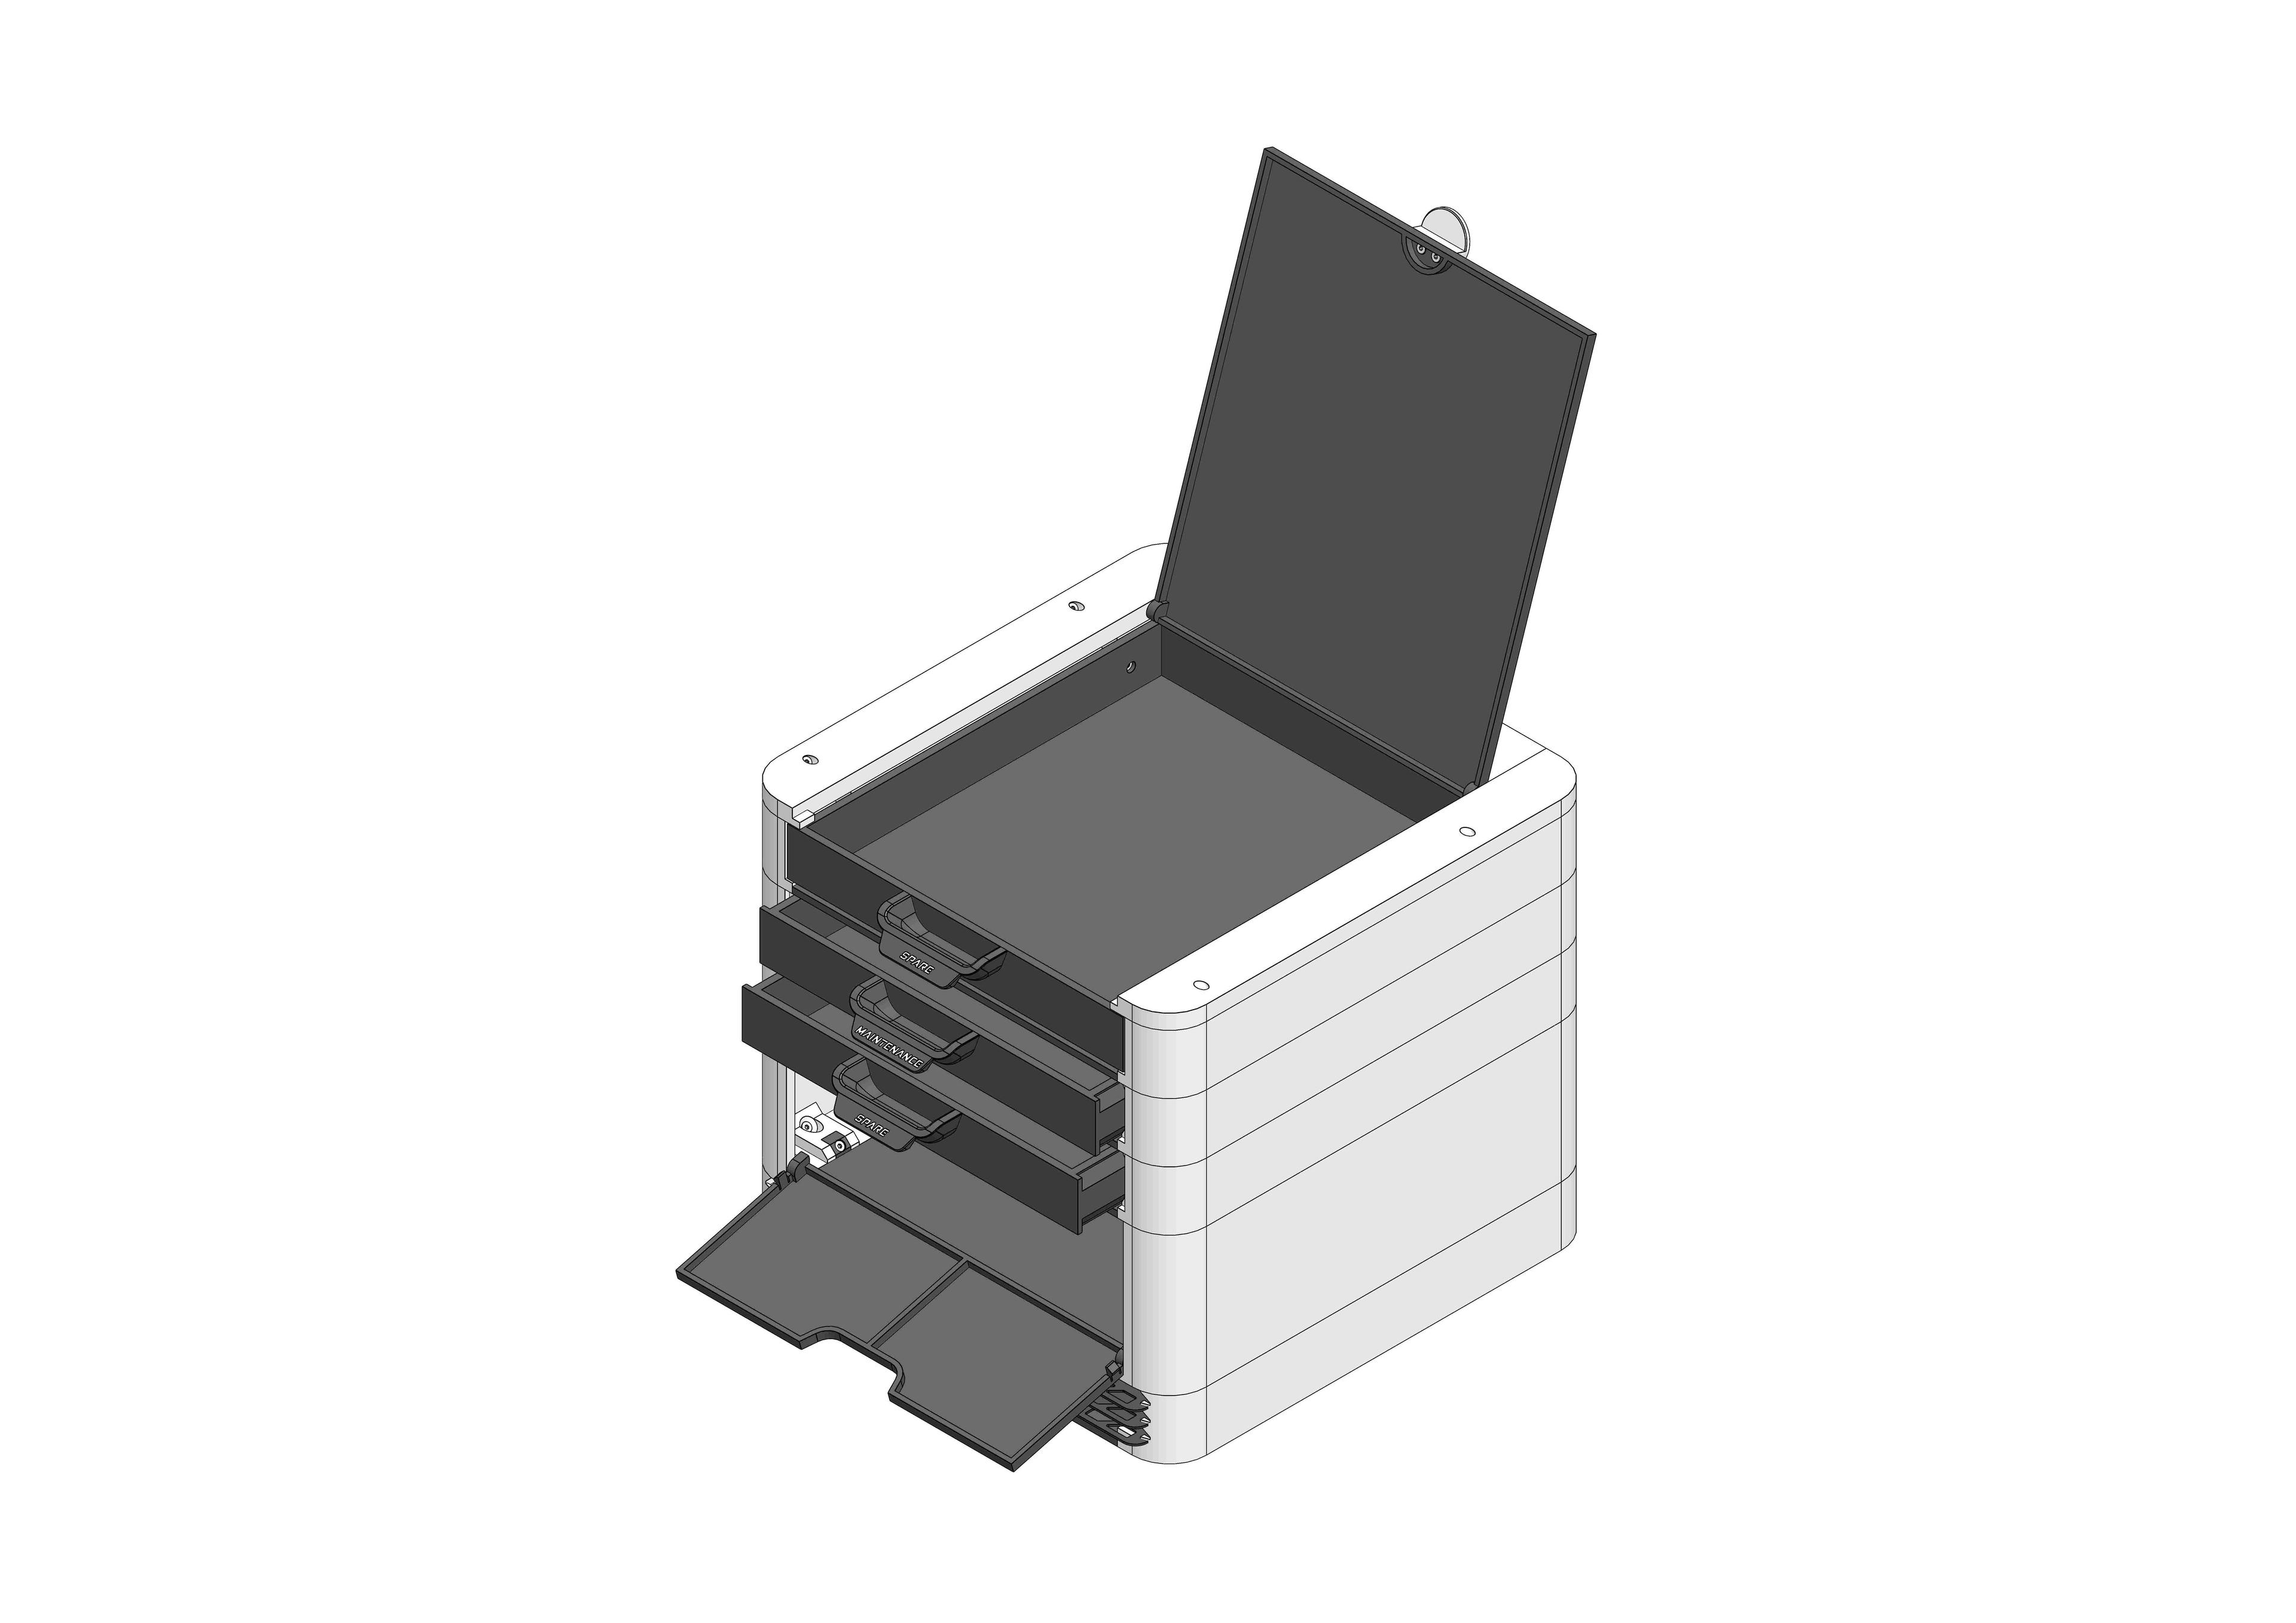 [BaBo] drawer modul 30 3d model